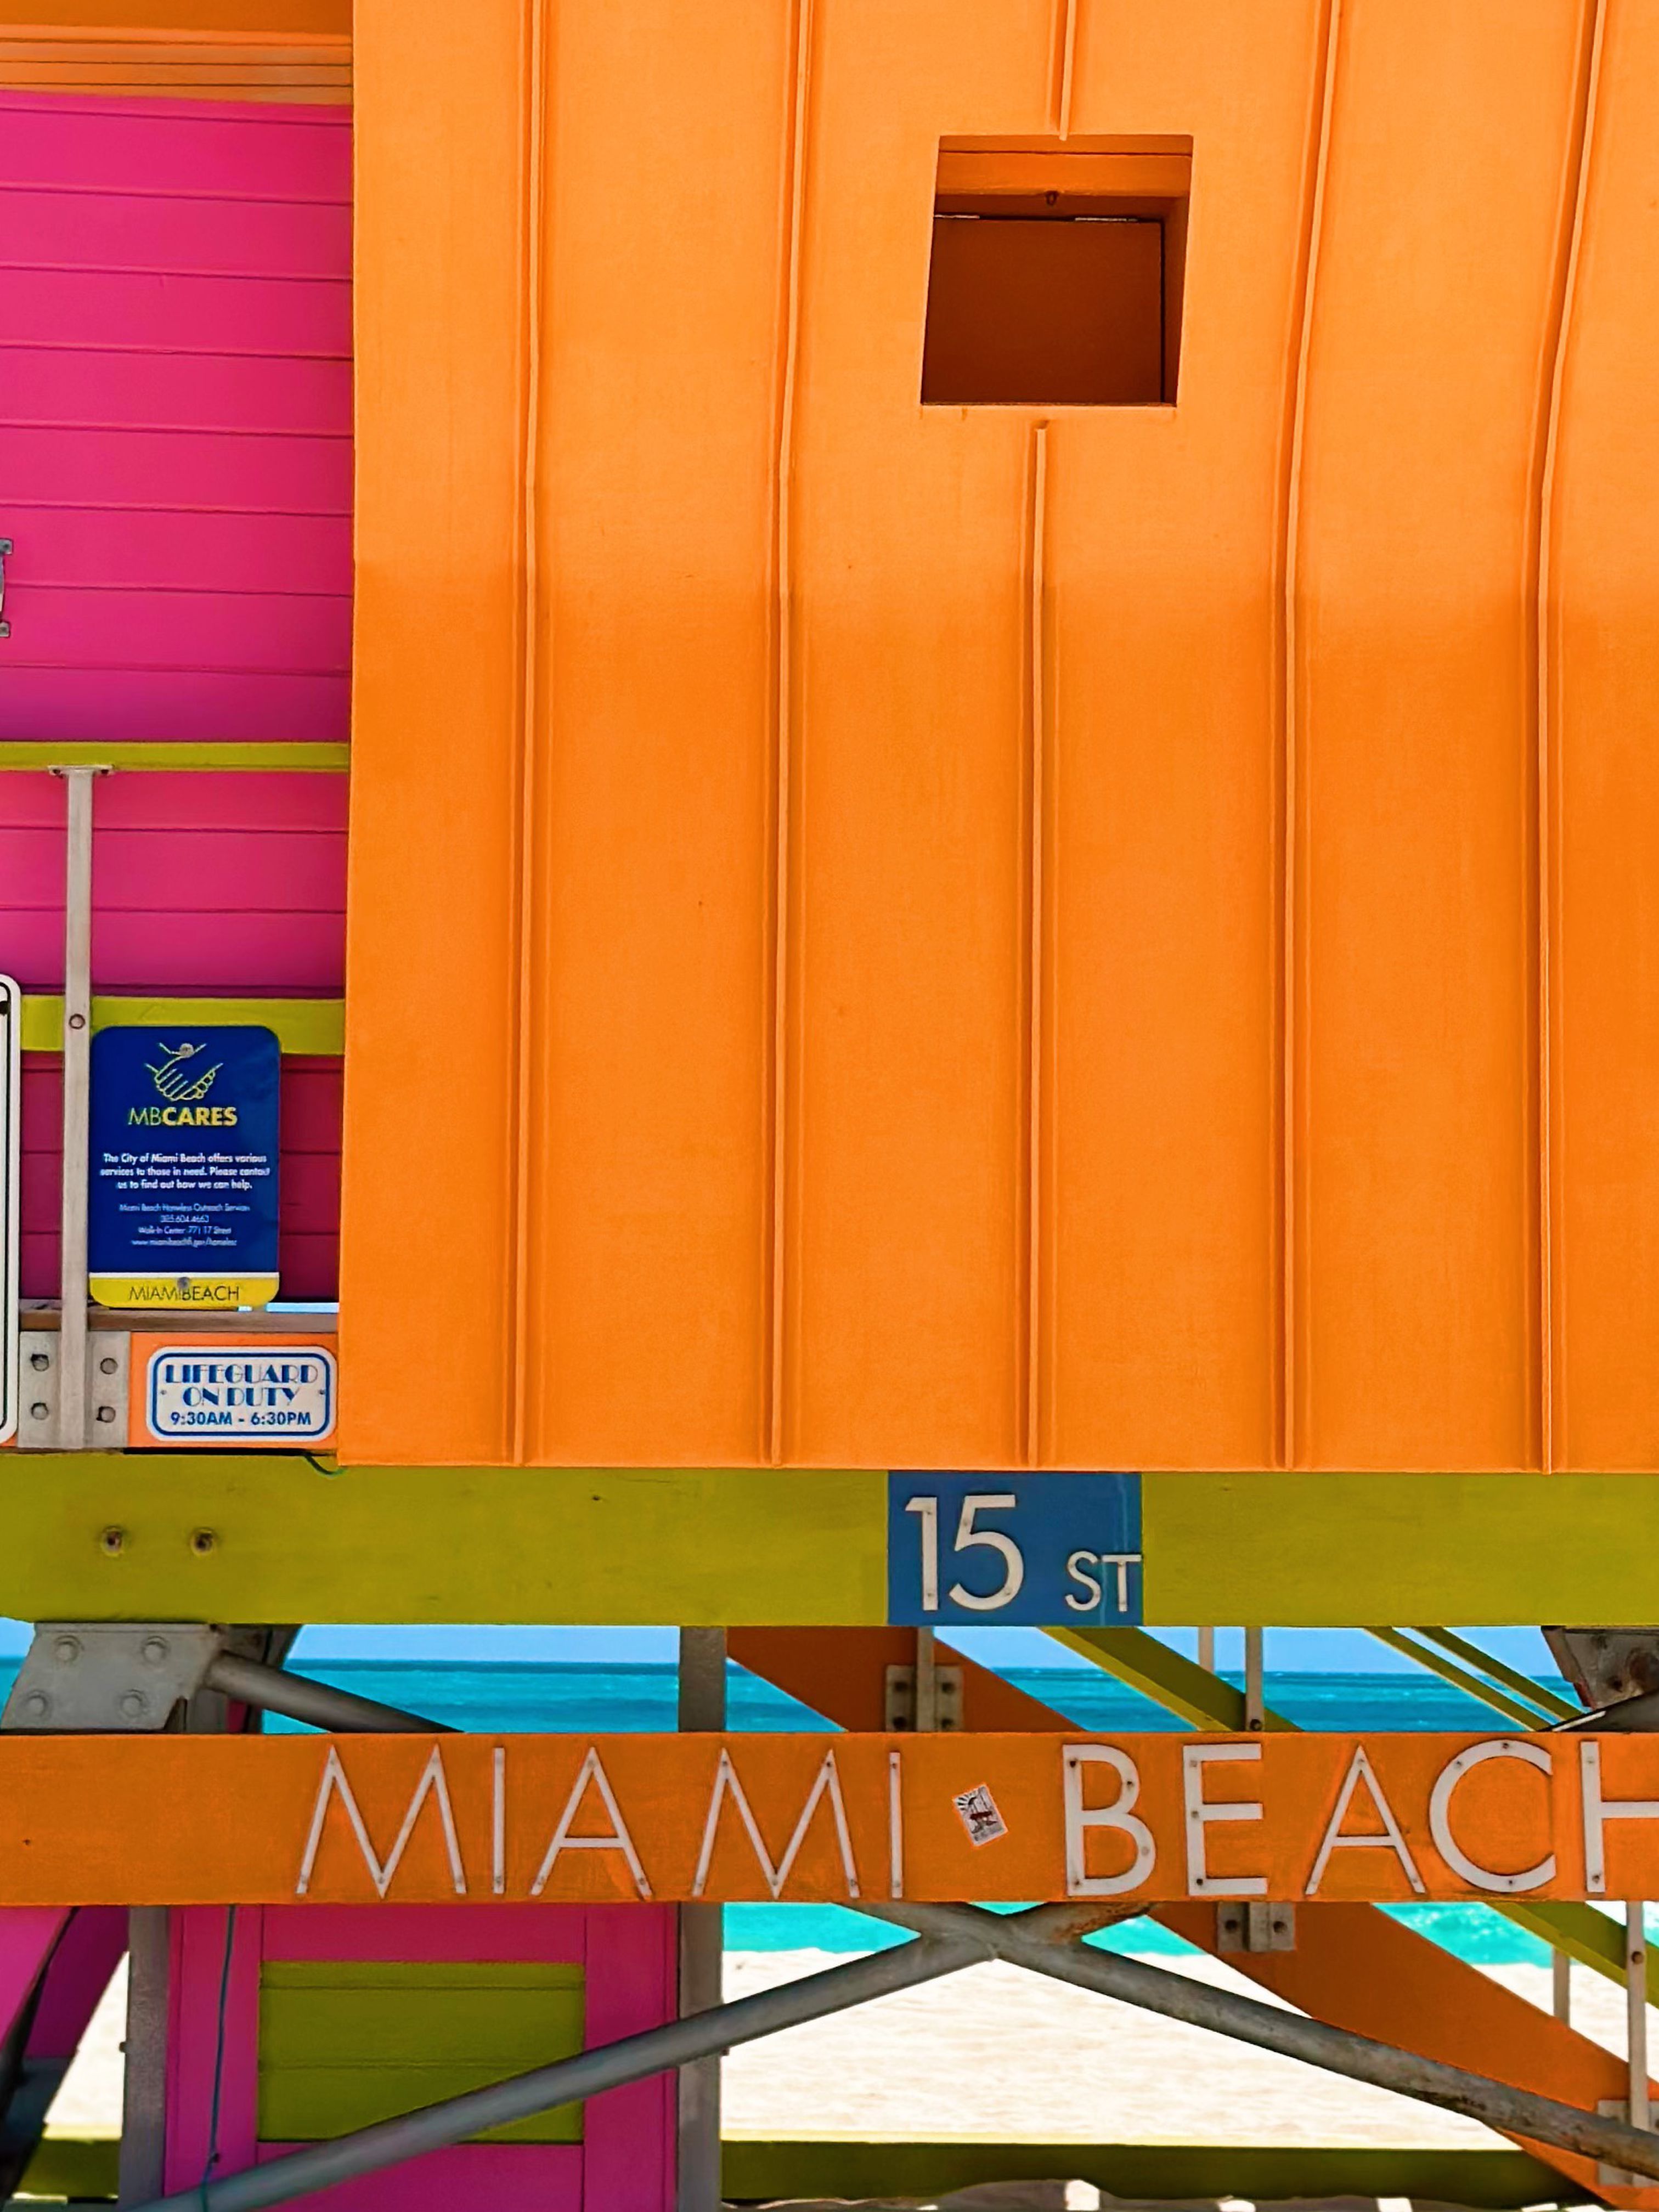 Ivan Ćosić posjetio je Miami: Grad je skup, ali i savršeno lijep i prepun događanja